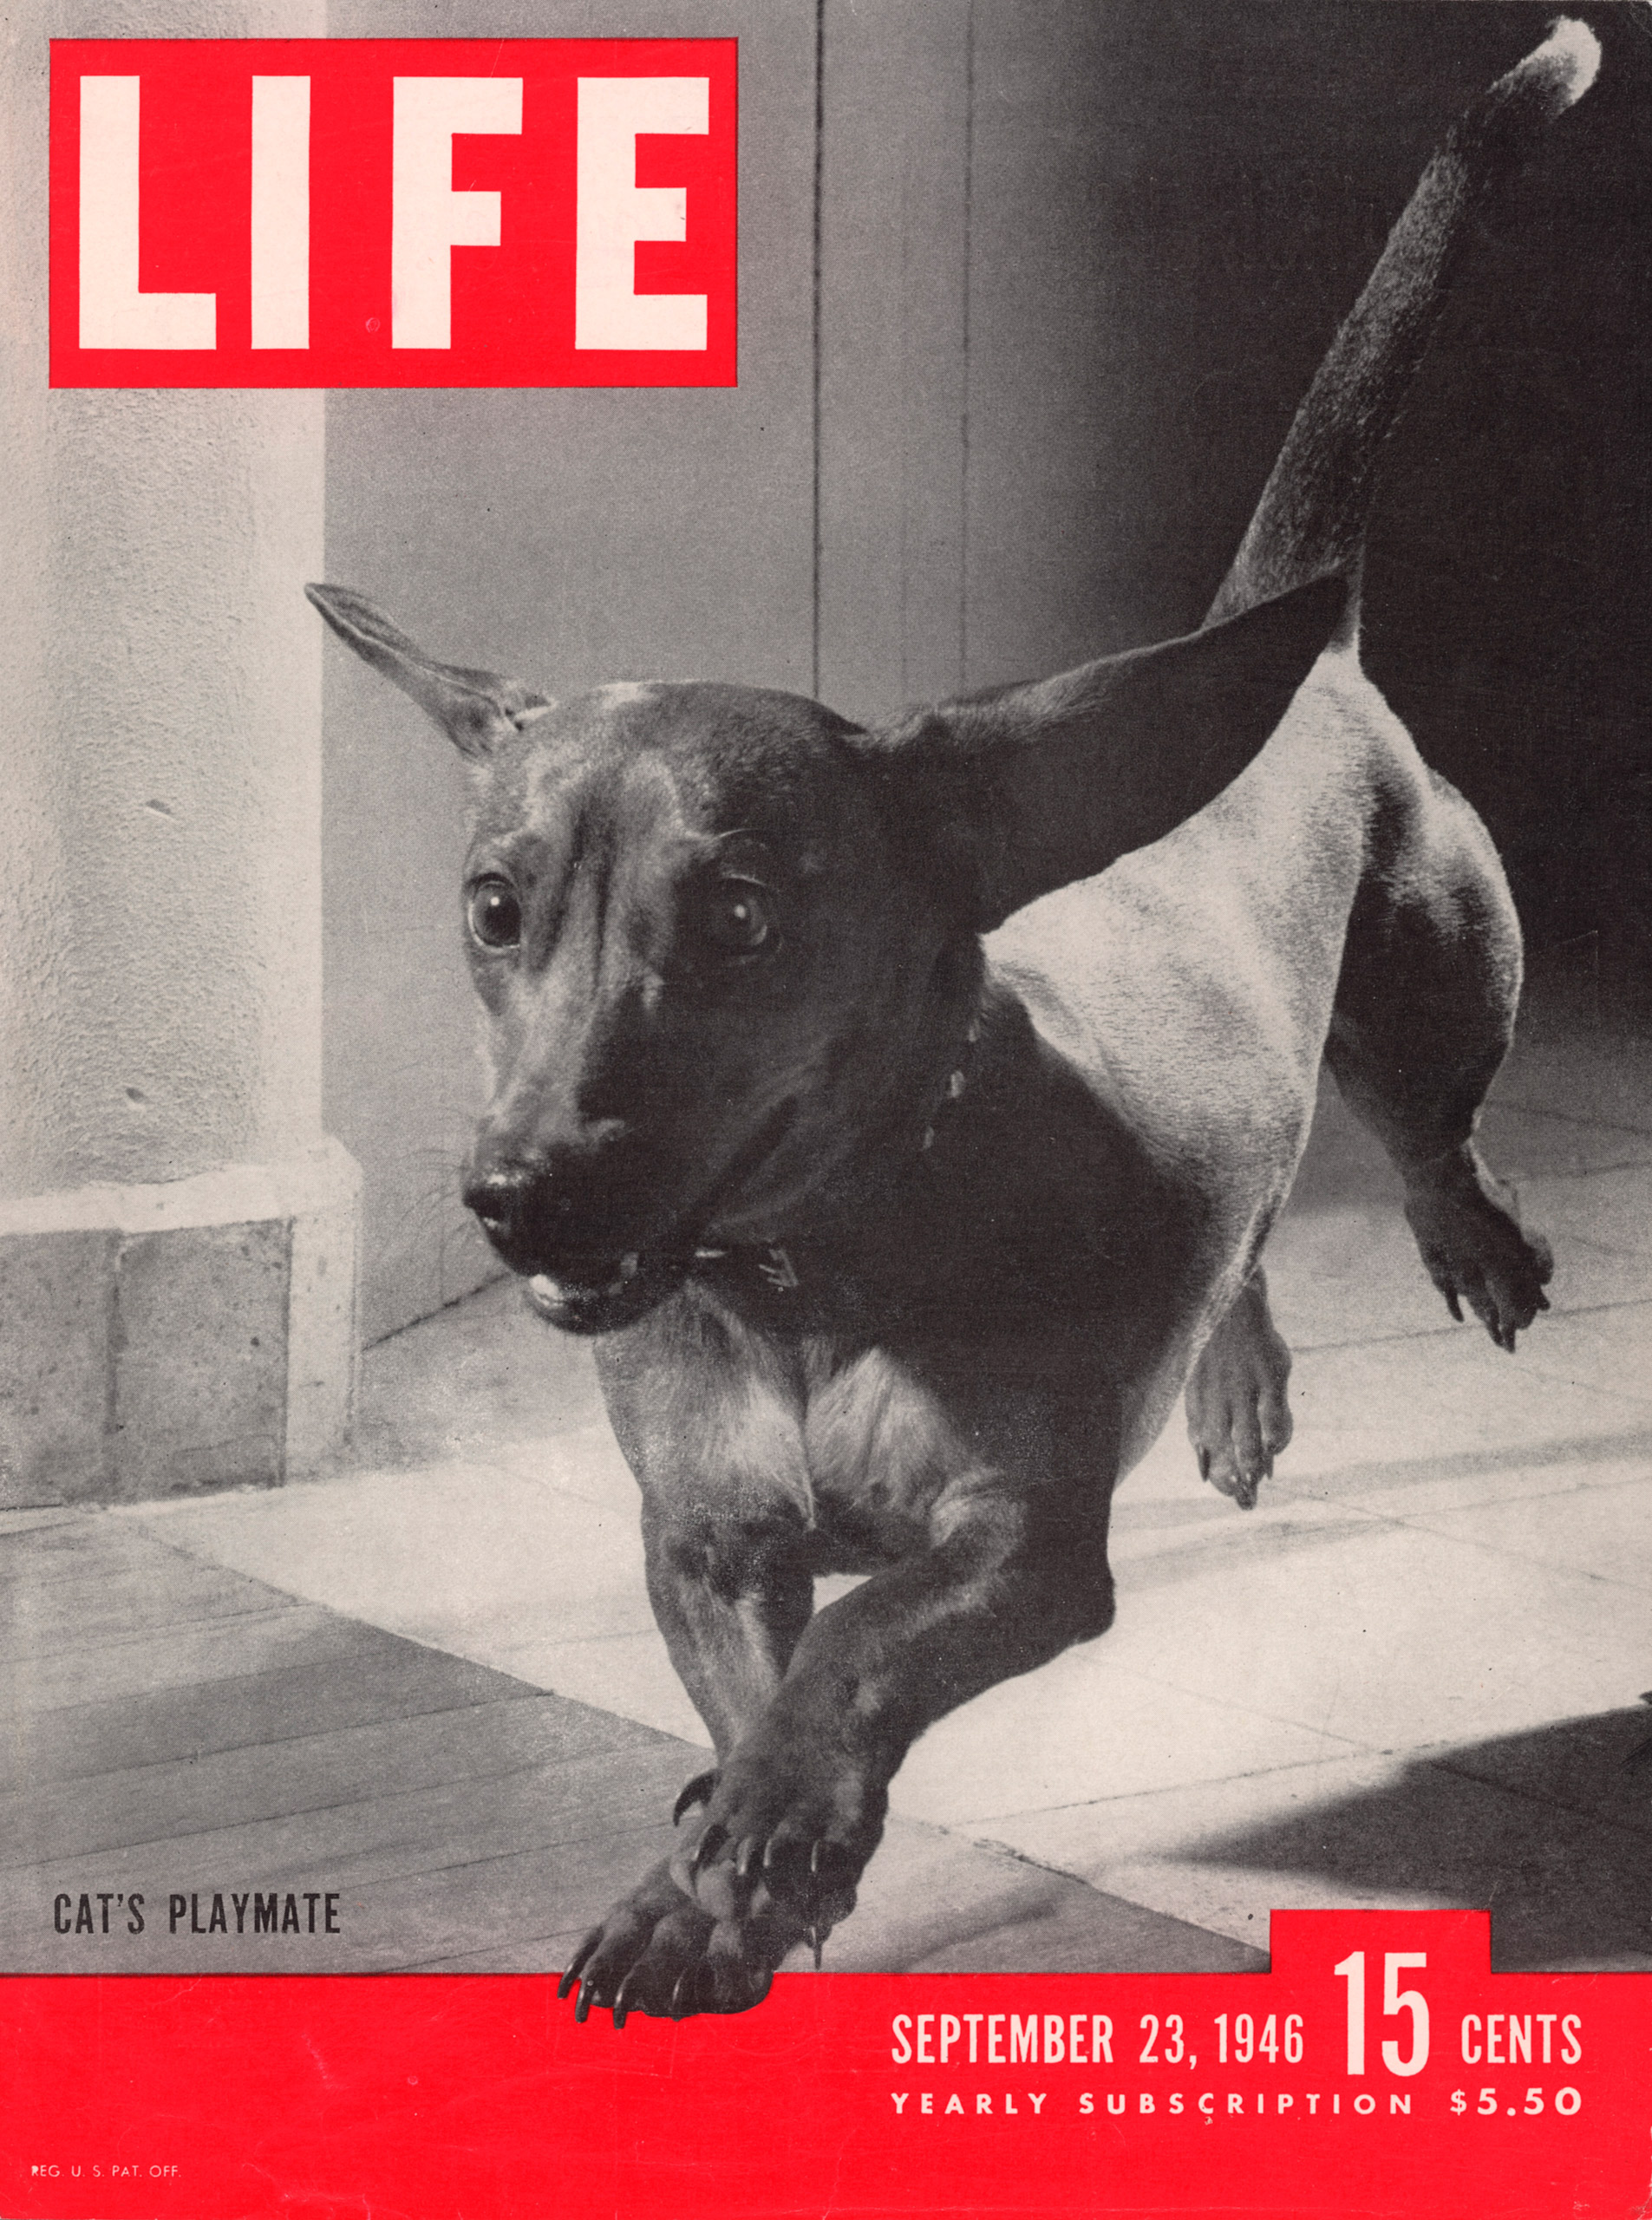 September 23, 1946 LIFE Magazine cover